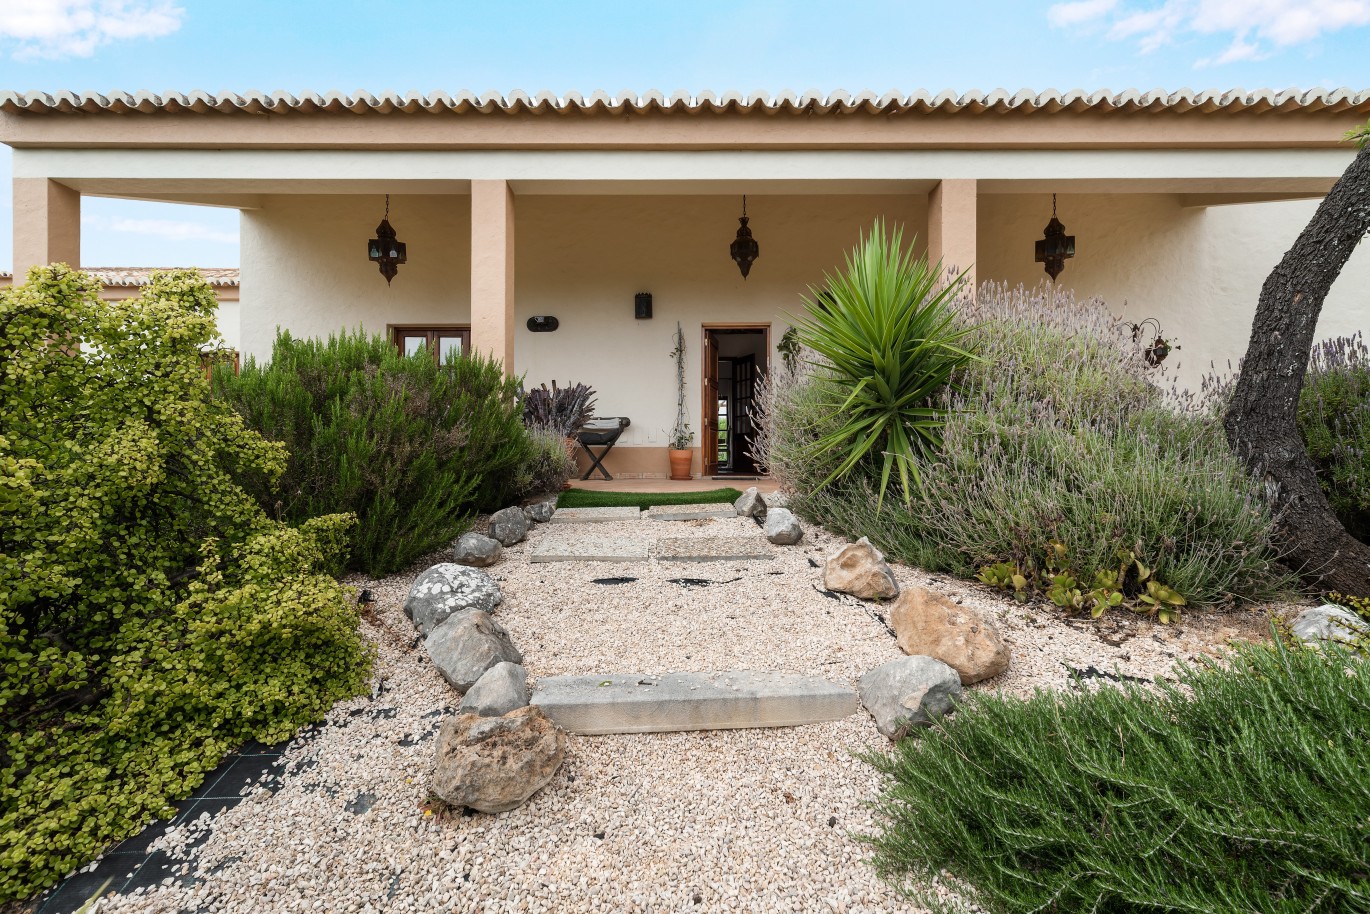 Moradia V3 com piscina, para venda, em Mexilhoeira Grande, Algarve_227501